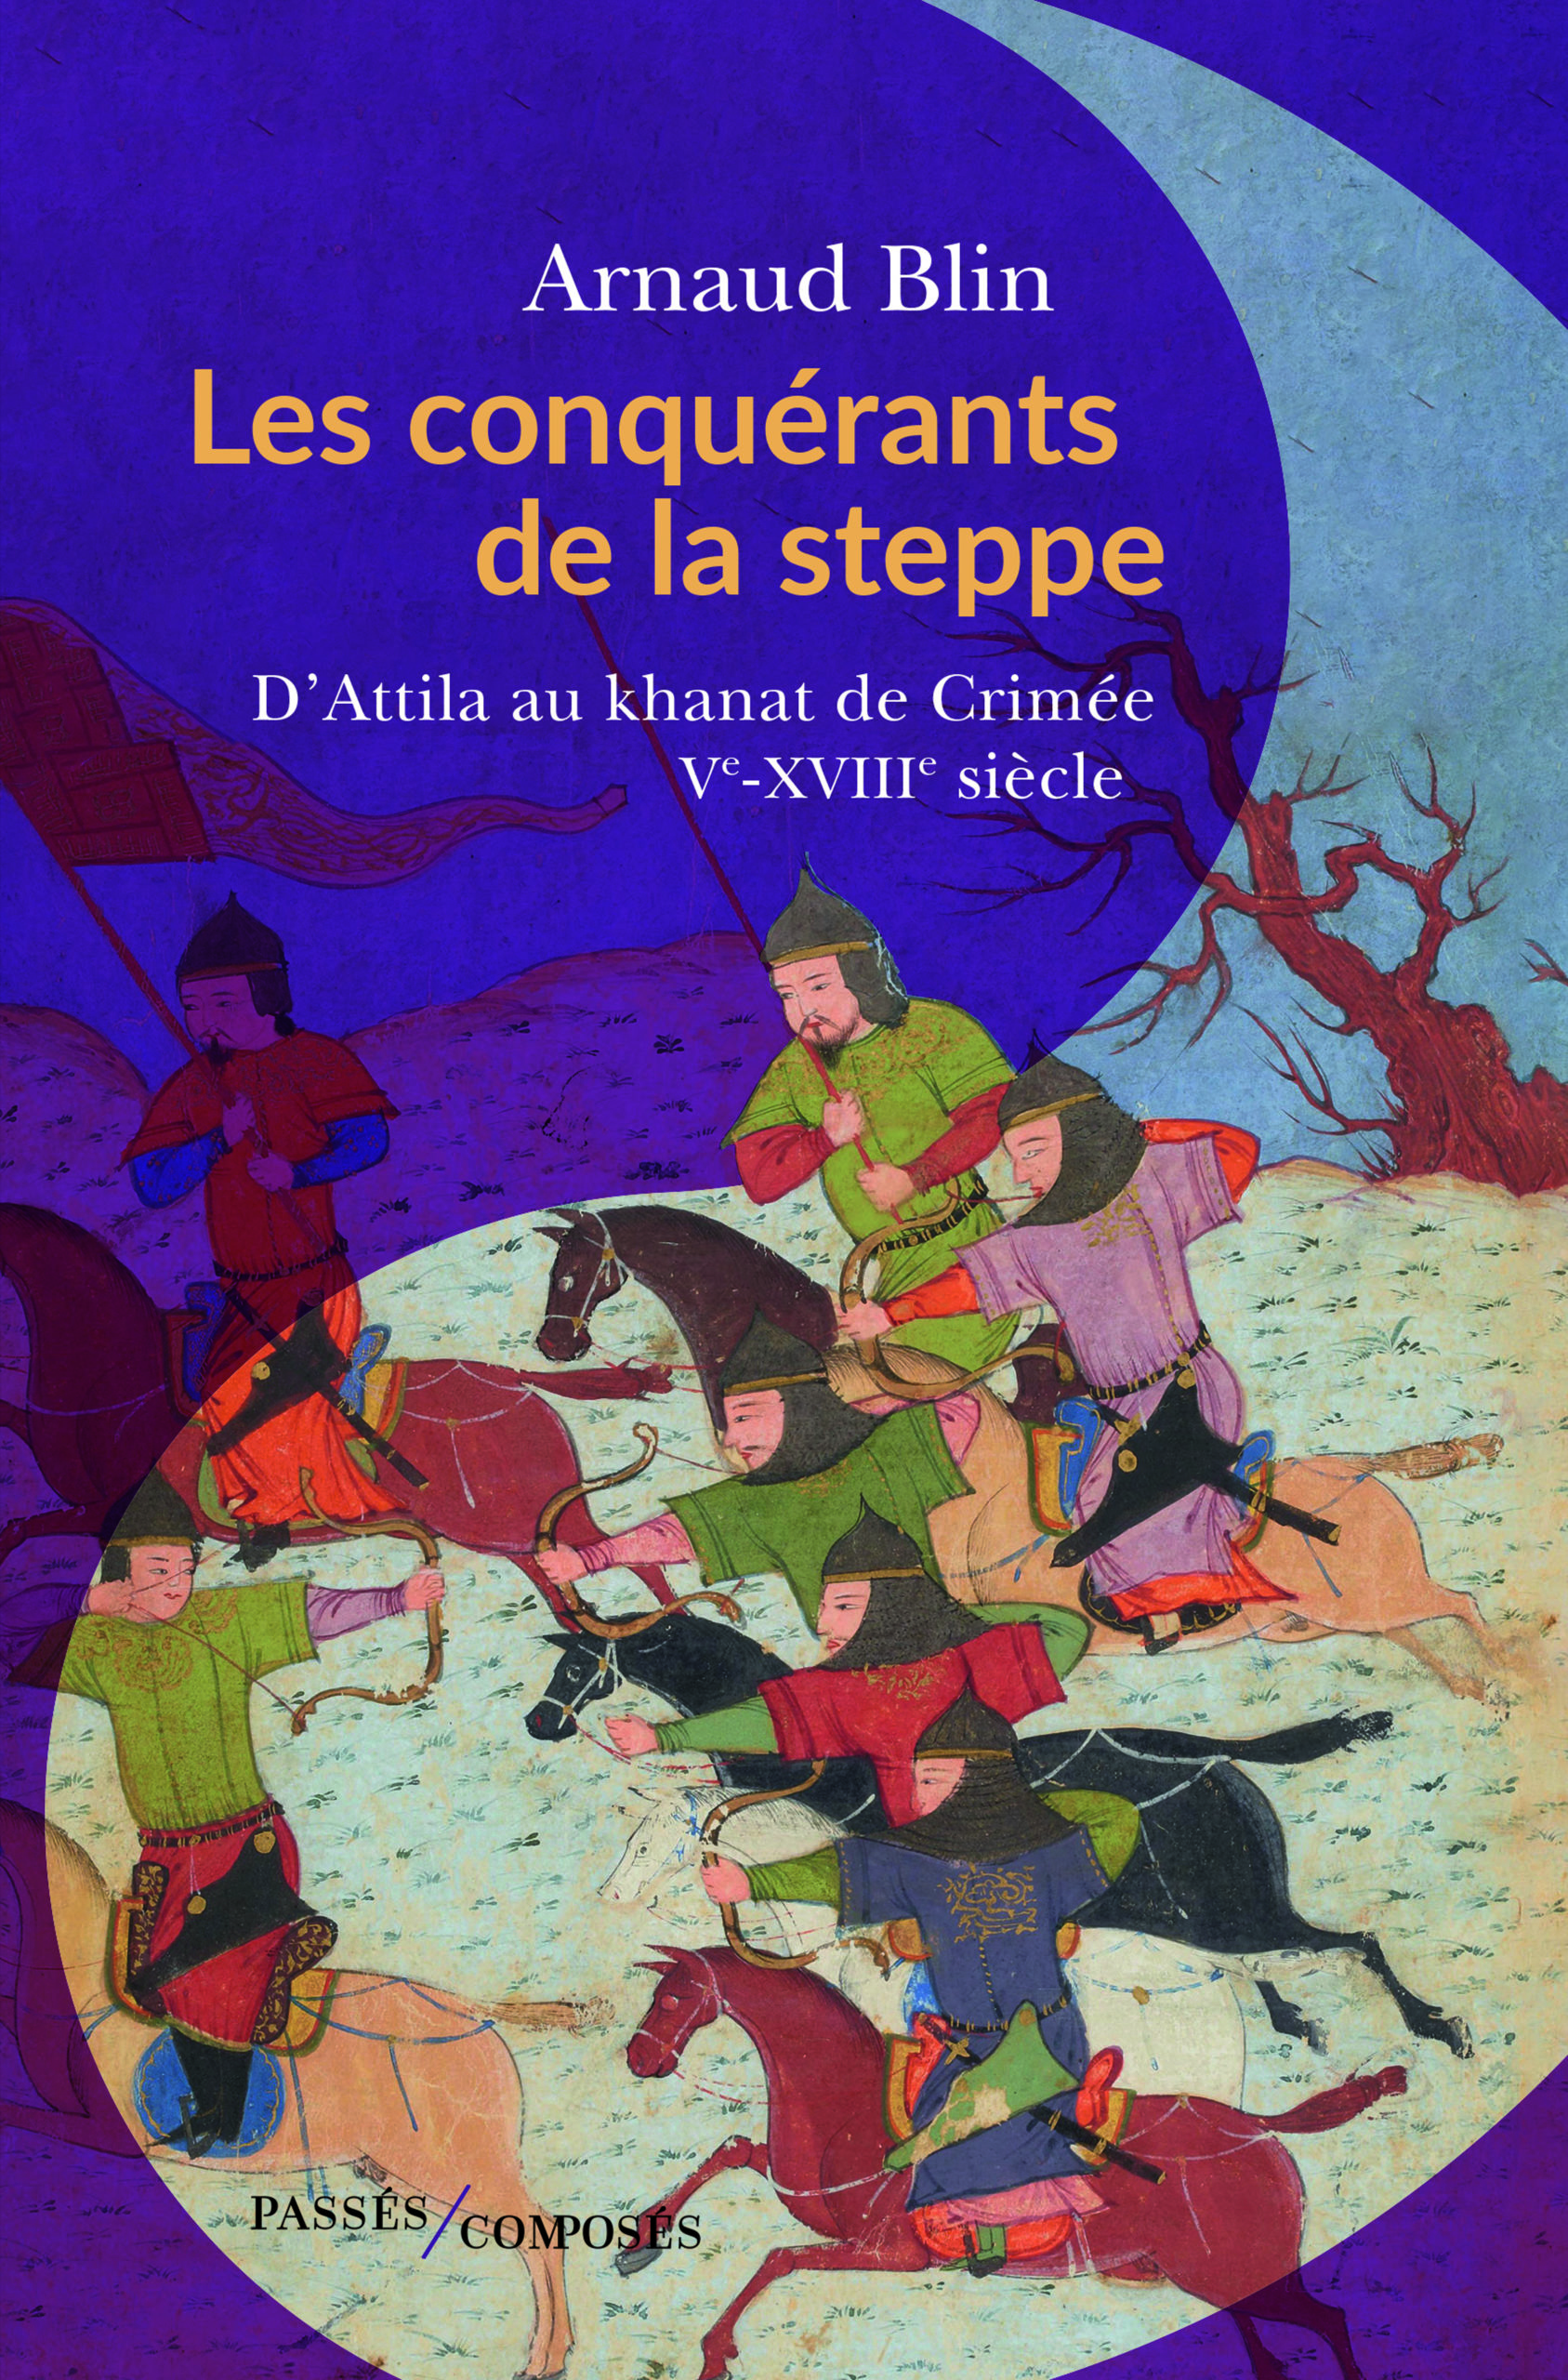 Les conquérants de la steppe, d’Attila au khanat de Crimée V-XVIIIème siècle d’Arnaud Blin paraît chez Passés / Composés.